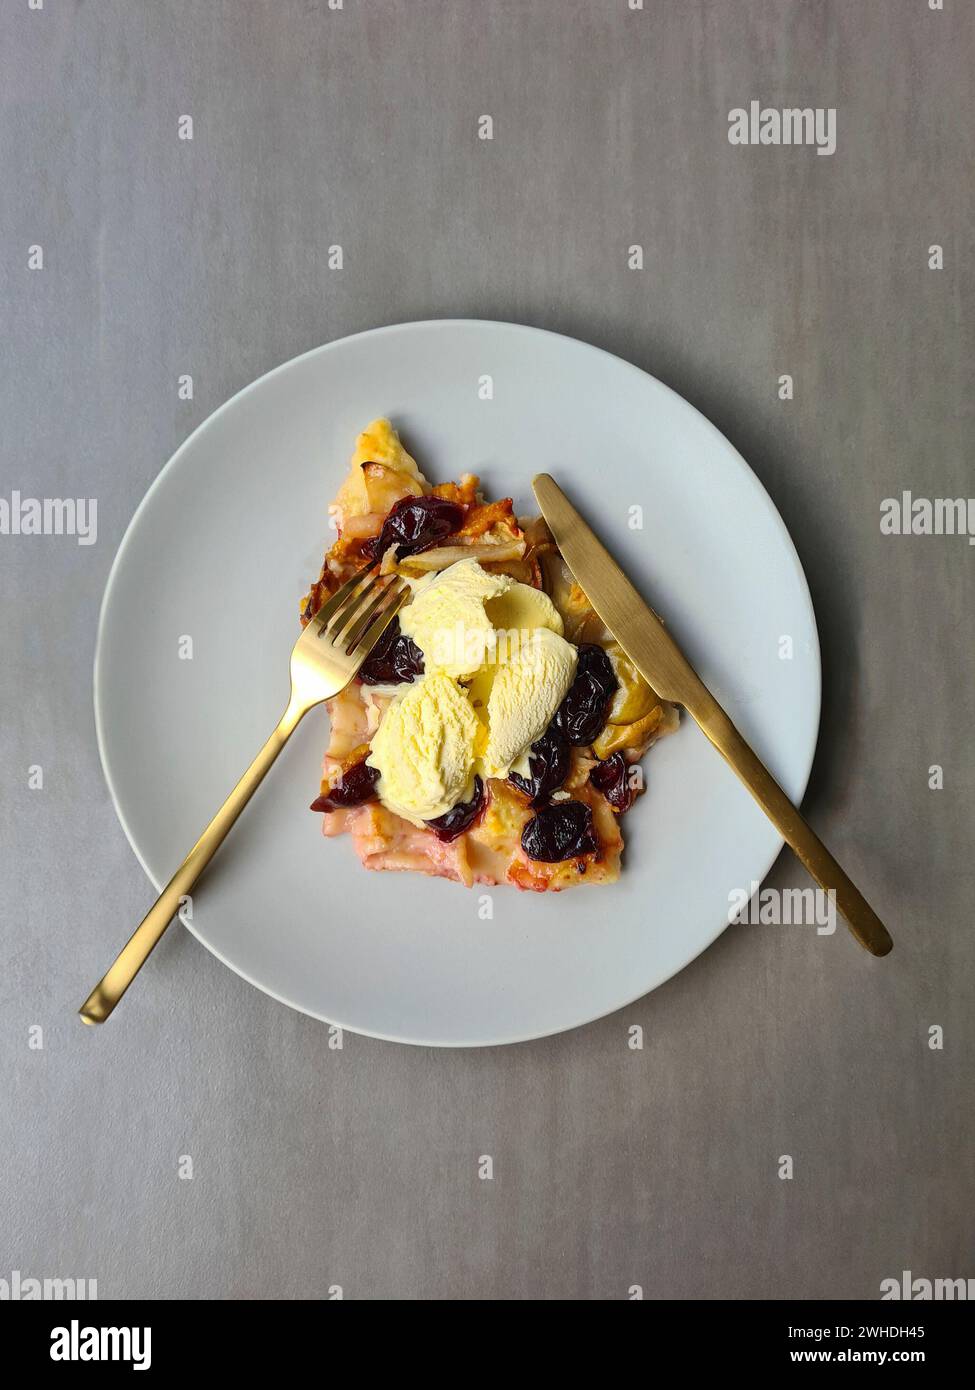 Una fetta di torta di prugne con gelato alla vaniglia servita su un piatto con forchetta e coltello Foto Stock